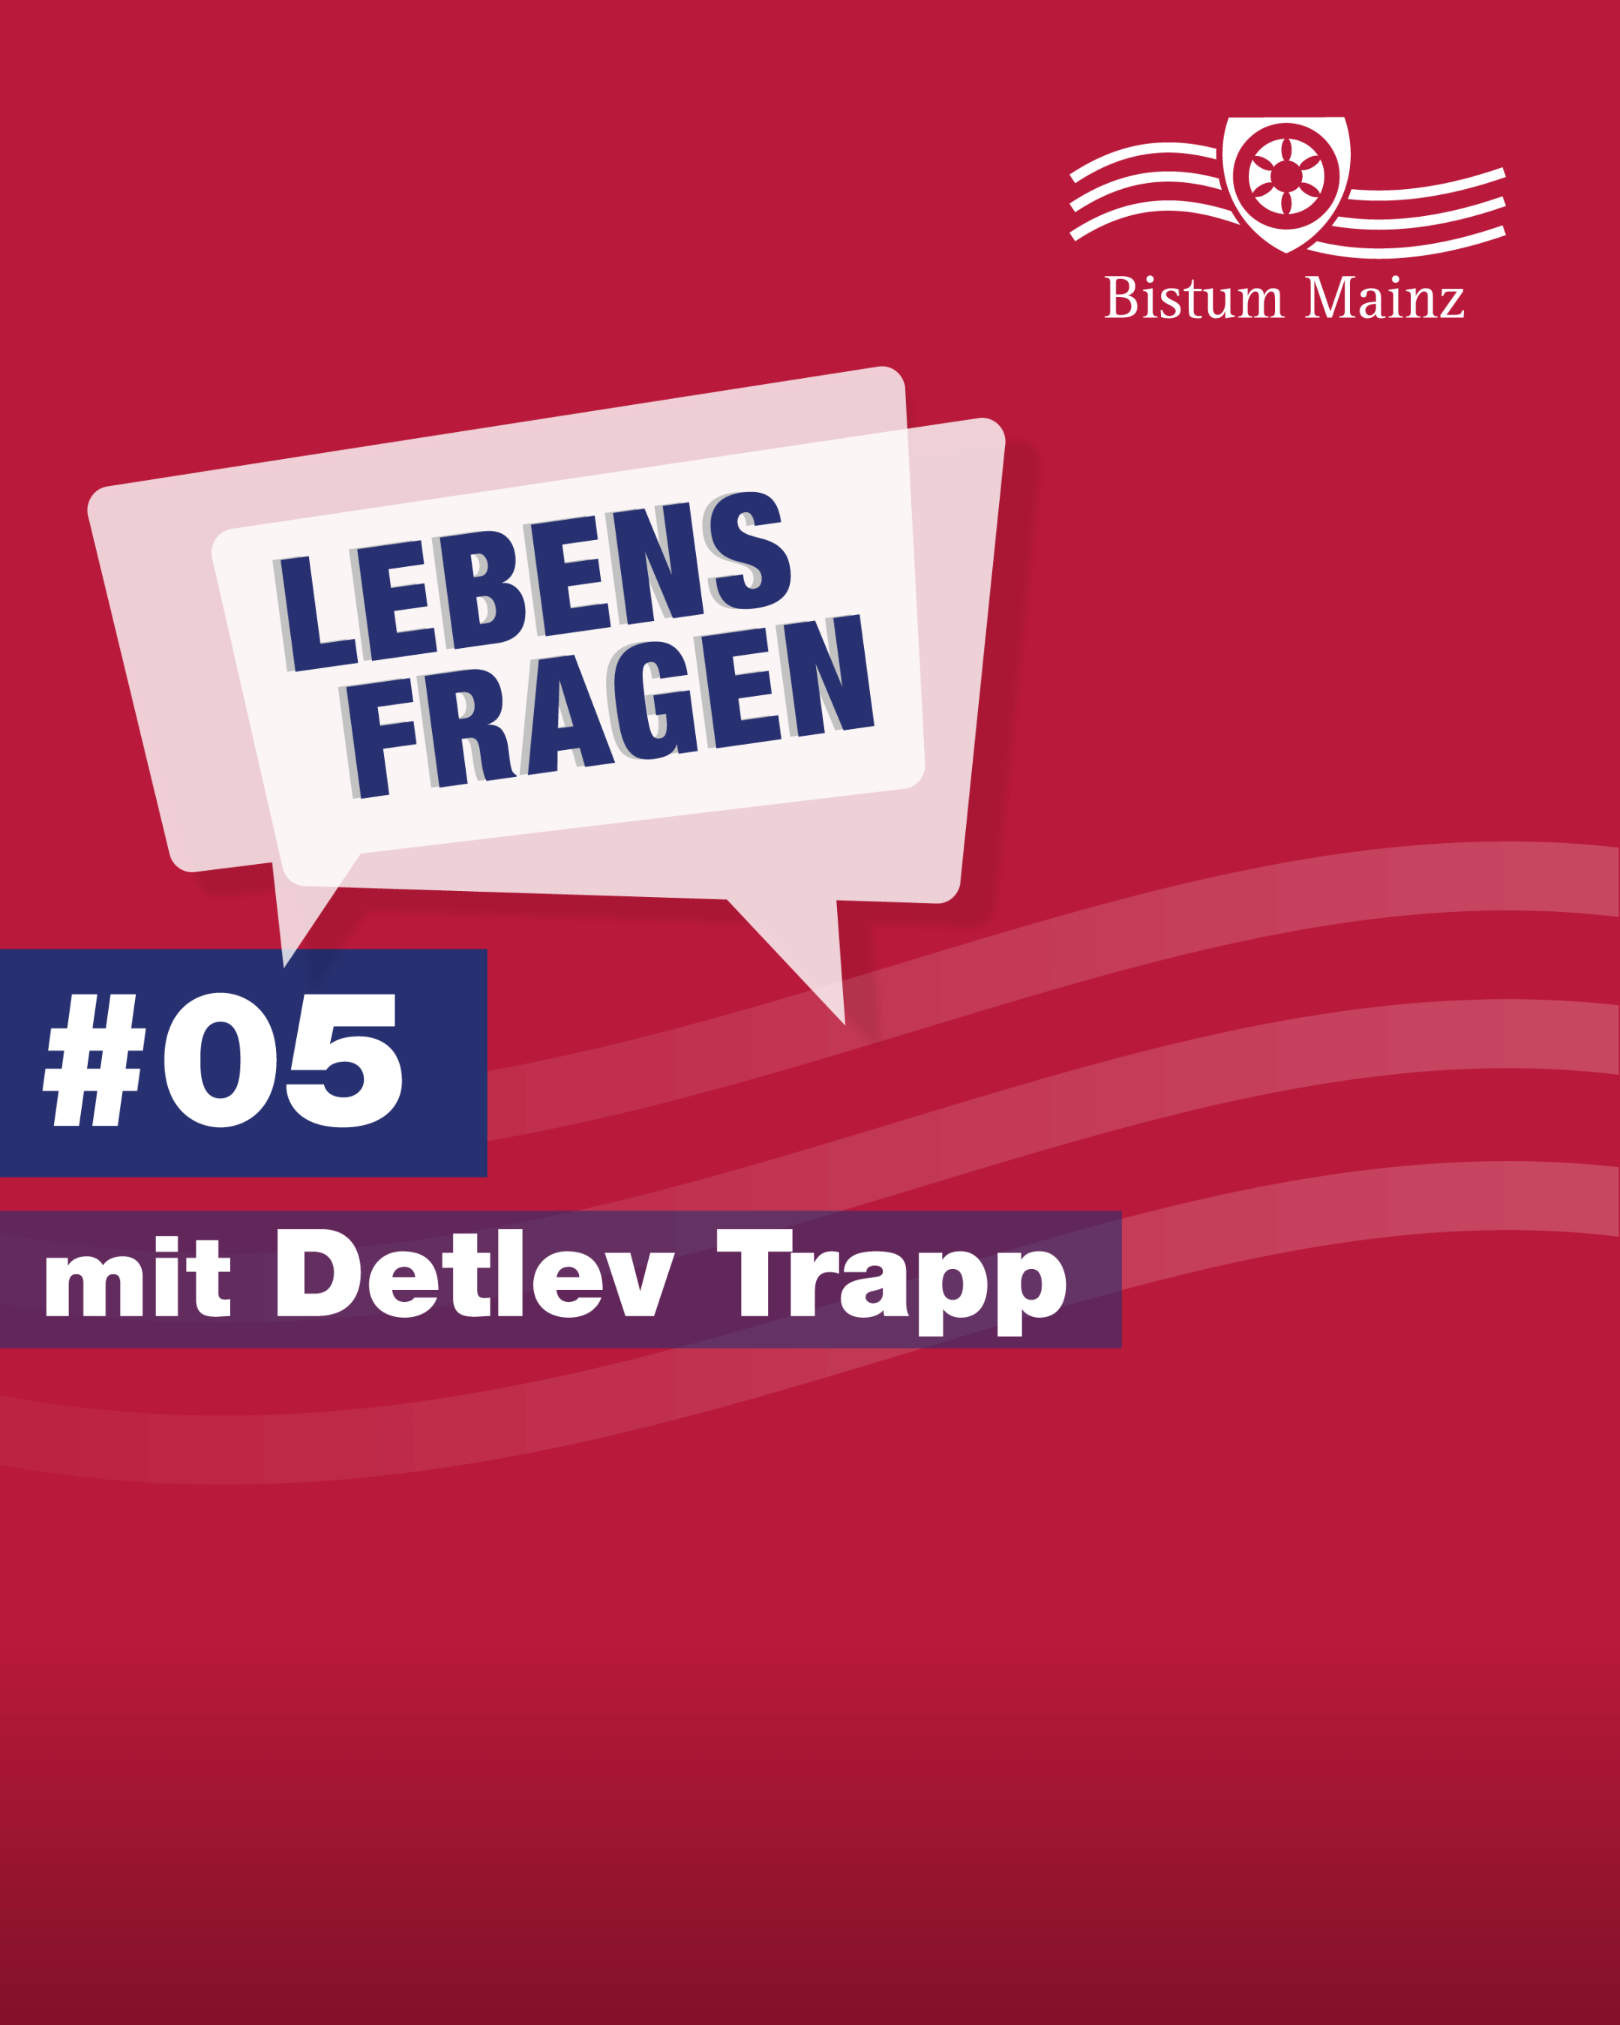 Lebensfragen-some-5zu4-folge5-detlev-trapp (c) Bistum Mainz